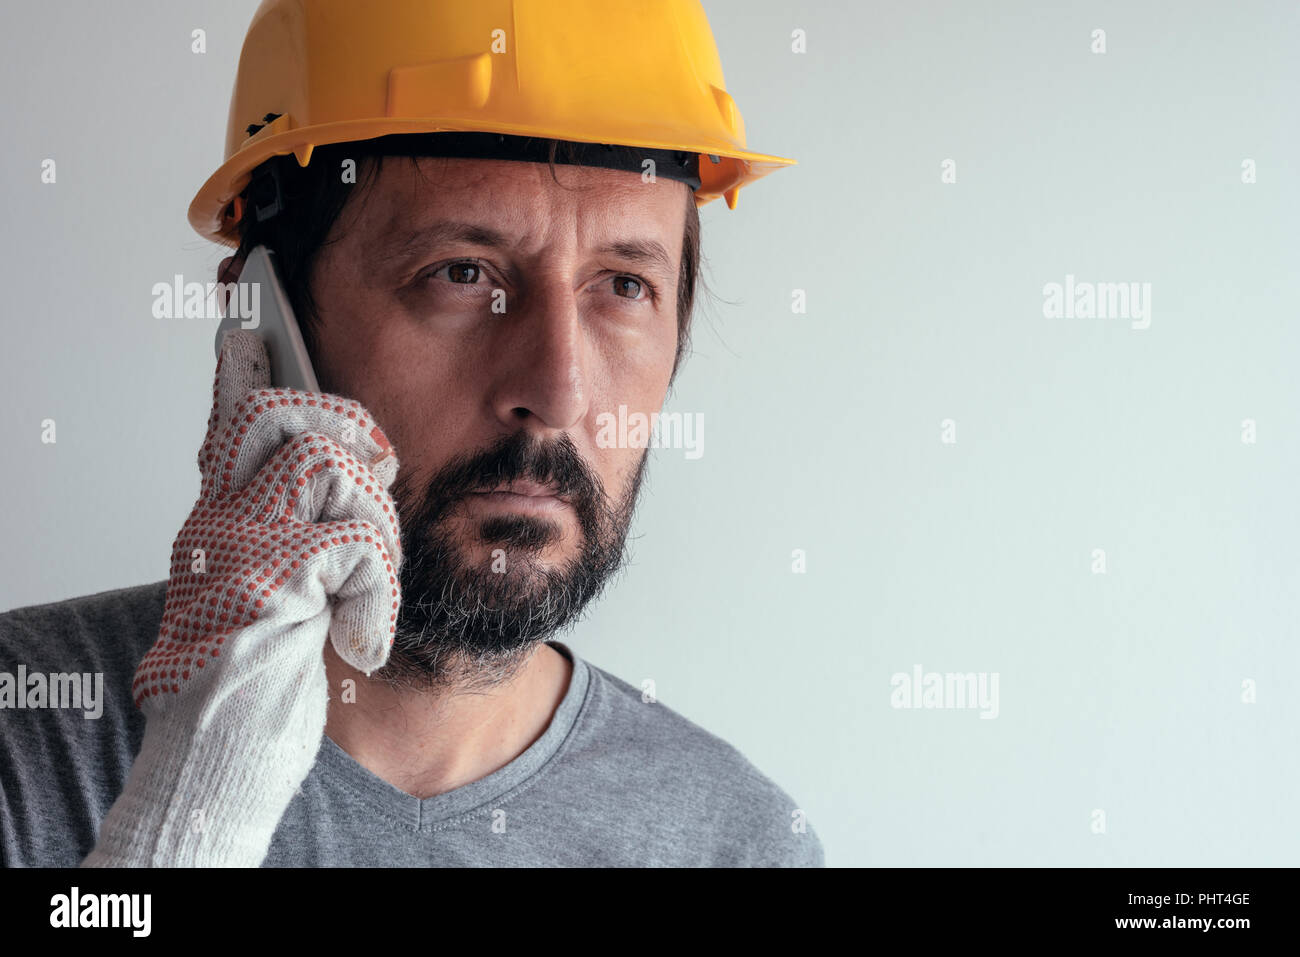 Bauingenieur Gespräch am Handy, schweren erwachsenen männlichen Person mittels Smartphone für die Kommunikation mit den Arbeitern auf der Baustelle Stockfoto